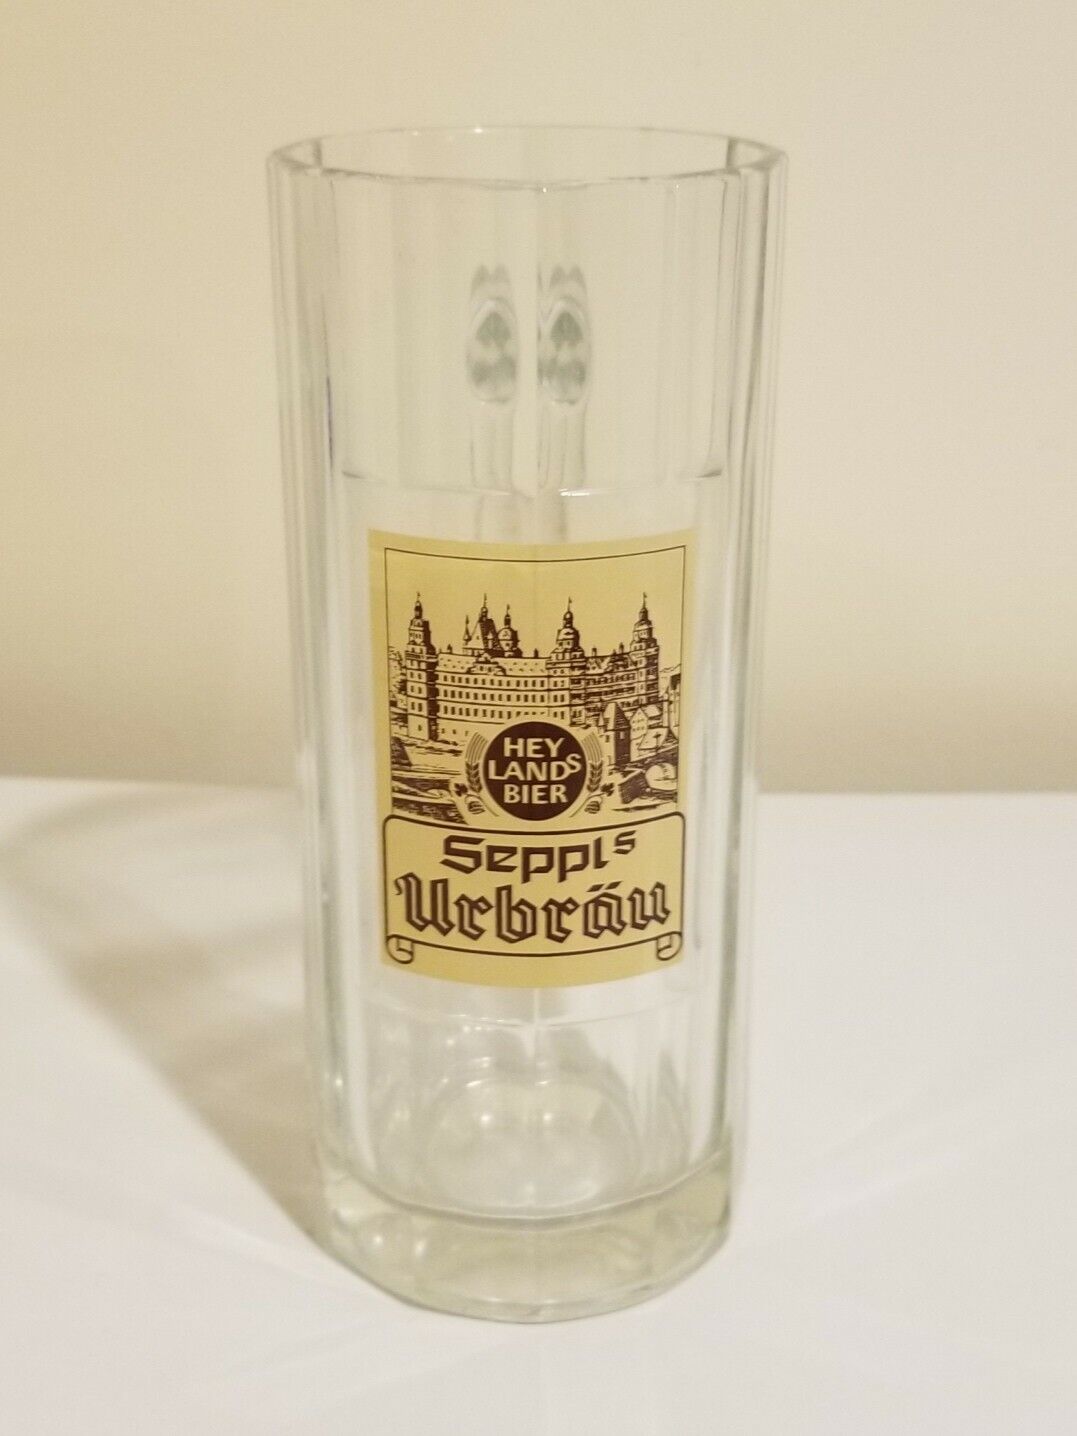 Vintage German Heylands Bier Seppl Urbrau Glass Beer Mug 0.4 Liter SOHM